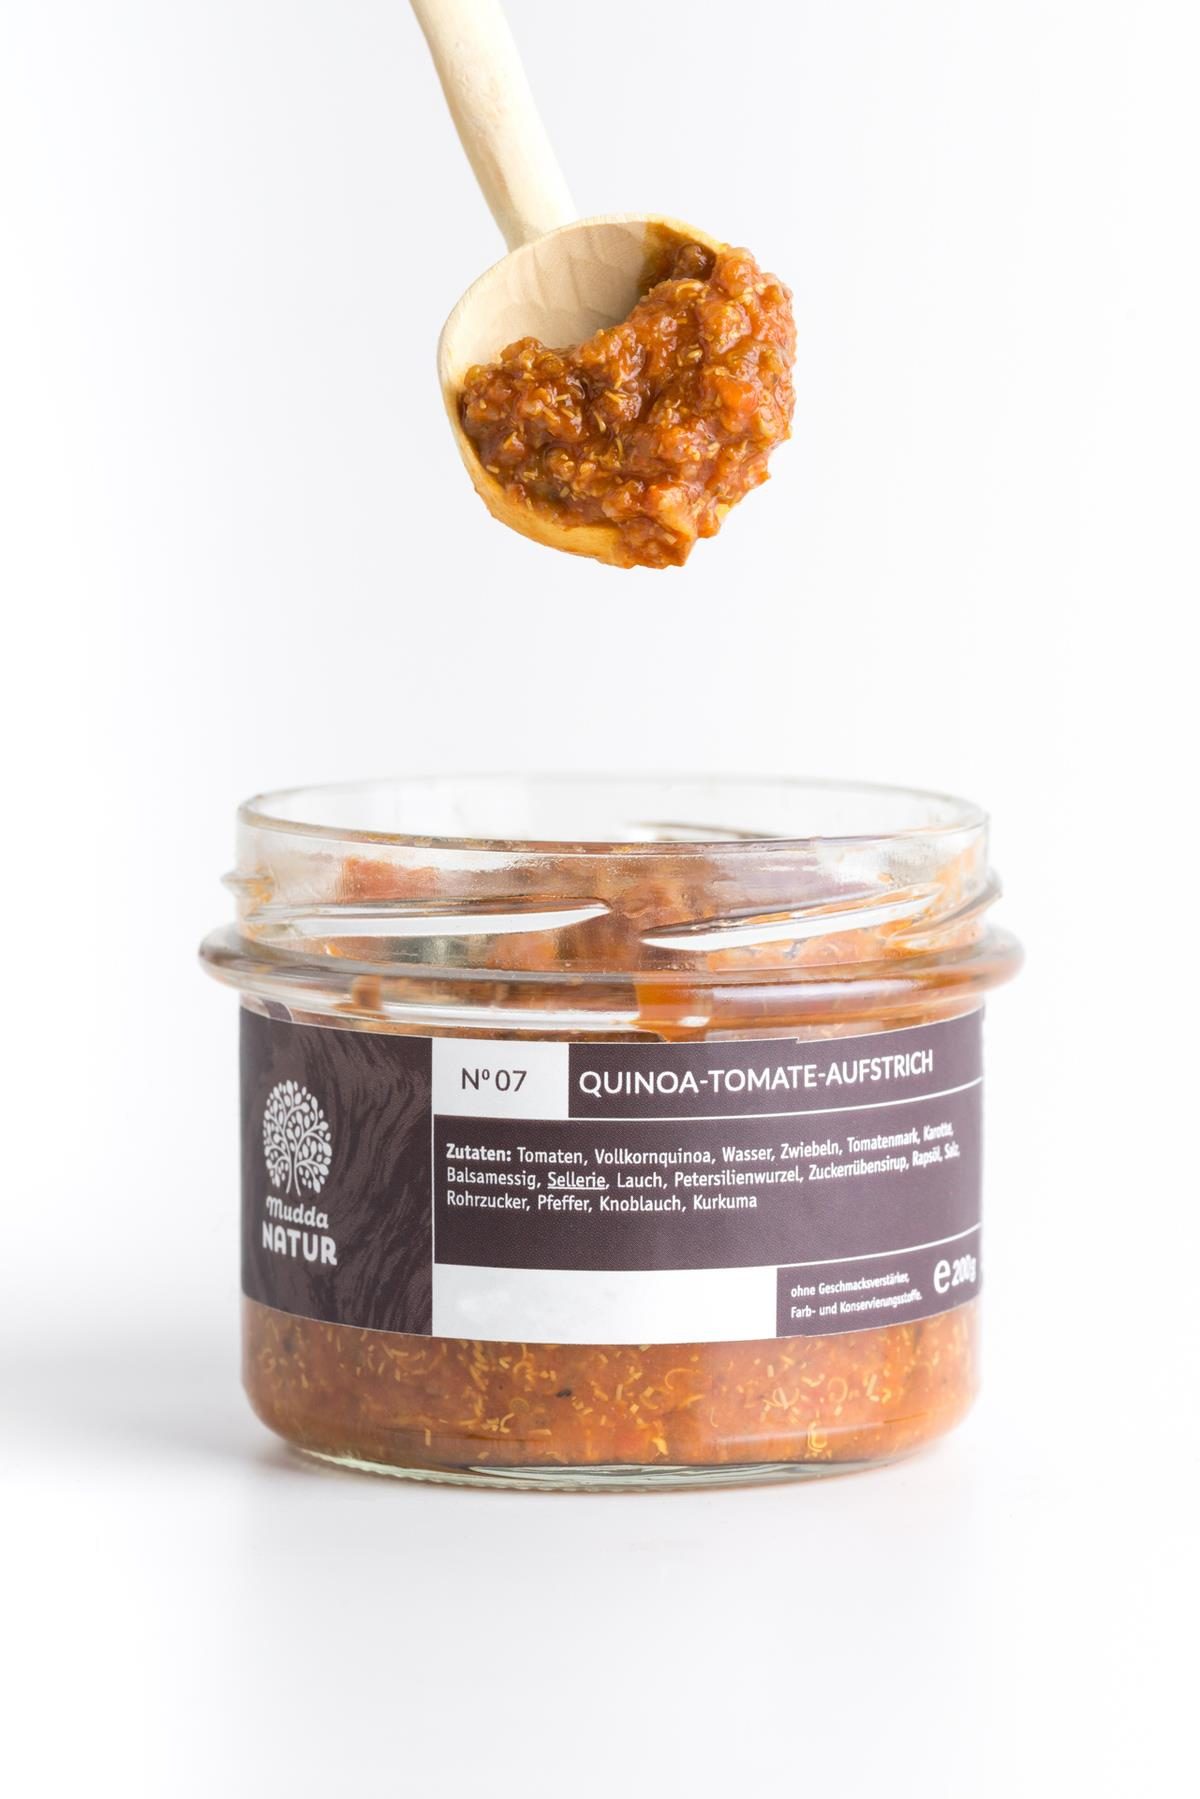 Quinoa-Tomaten-Aufstrich - Mudda Natur Produktbild 2